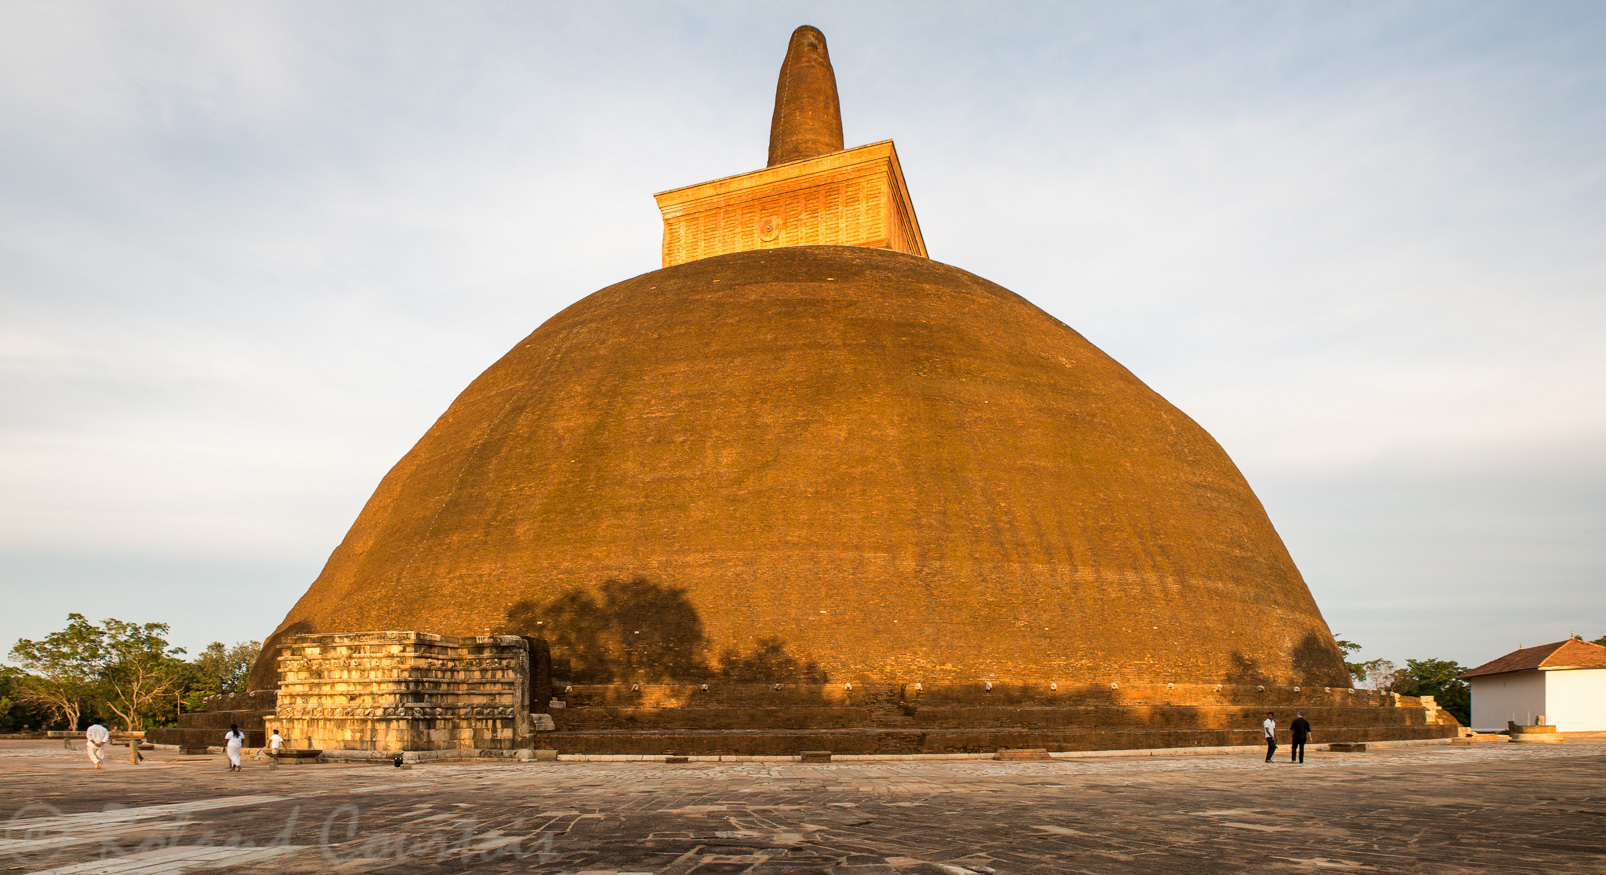 Abhayagiri Dagoba. La plus grande construction en briques après les pyramides de Gizeh. Le plus grand stupa du monde comporte plus de 93 millions de briques.